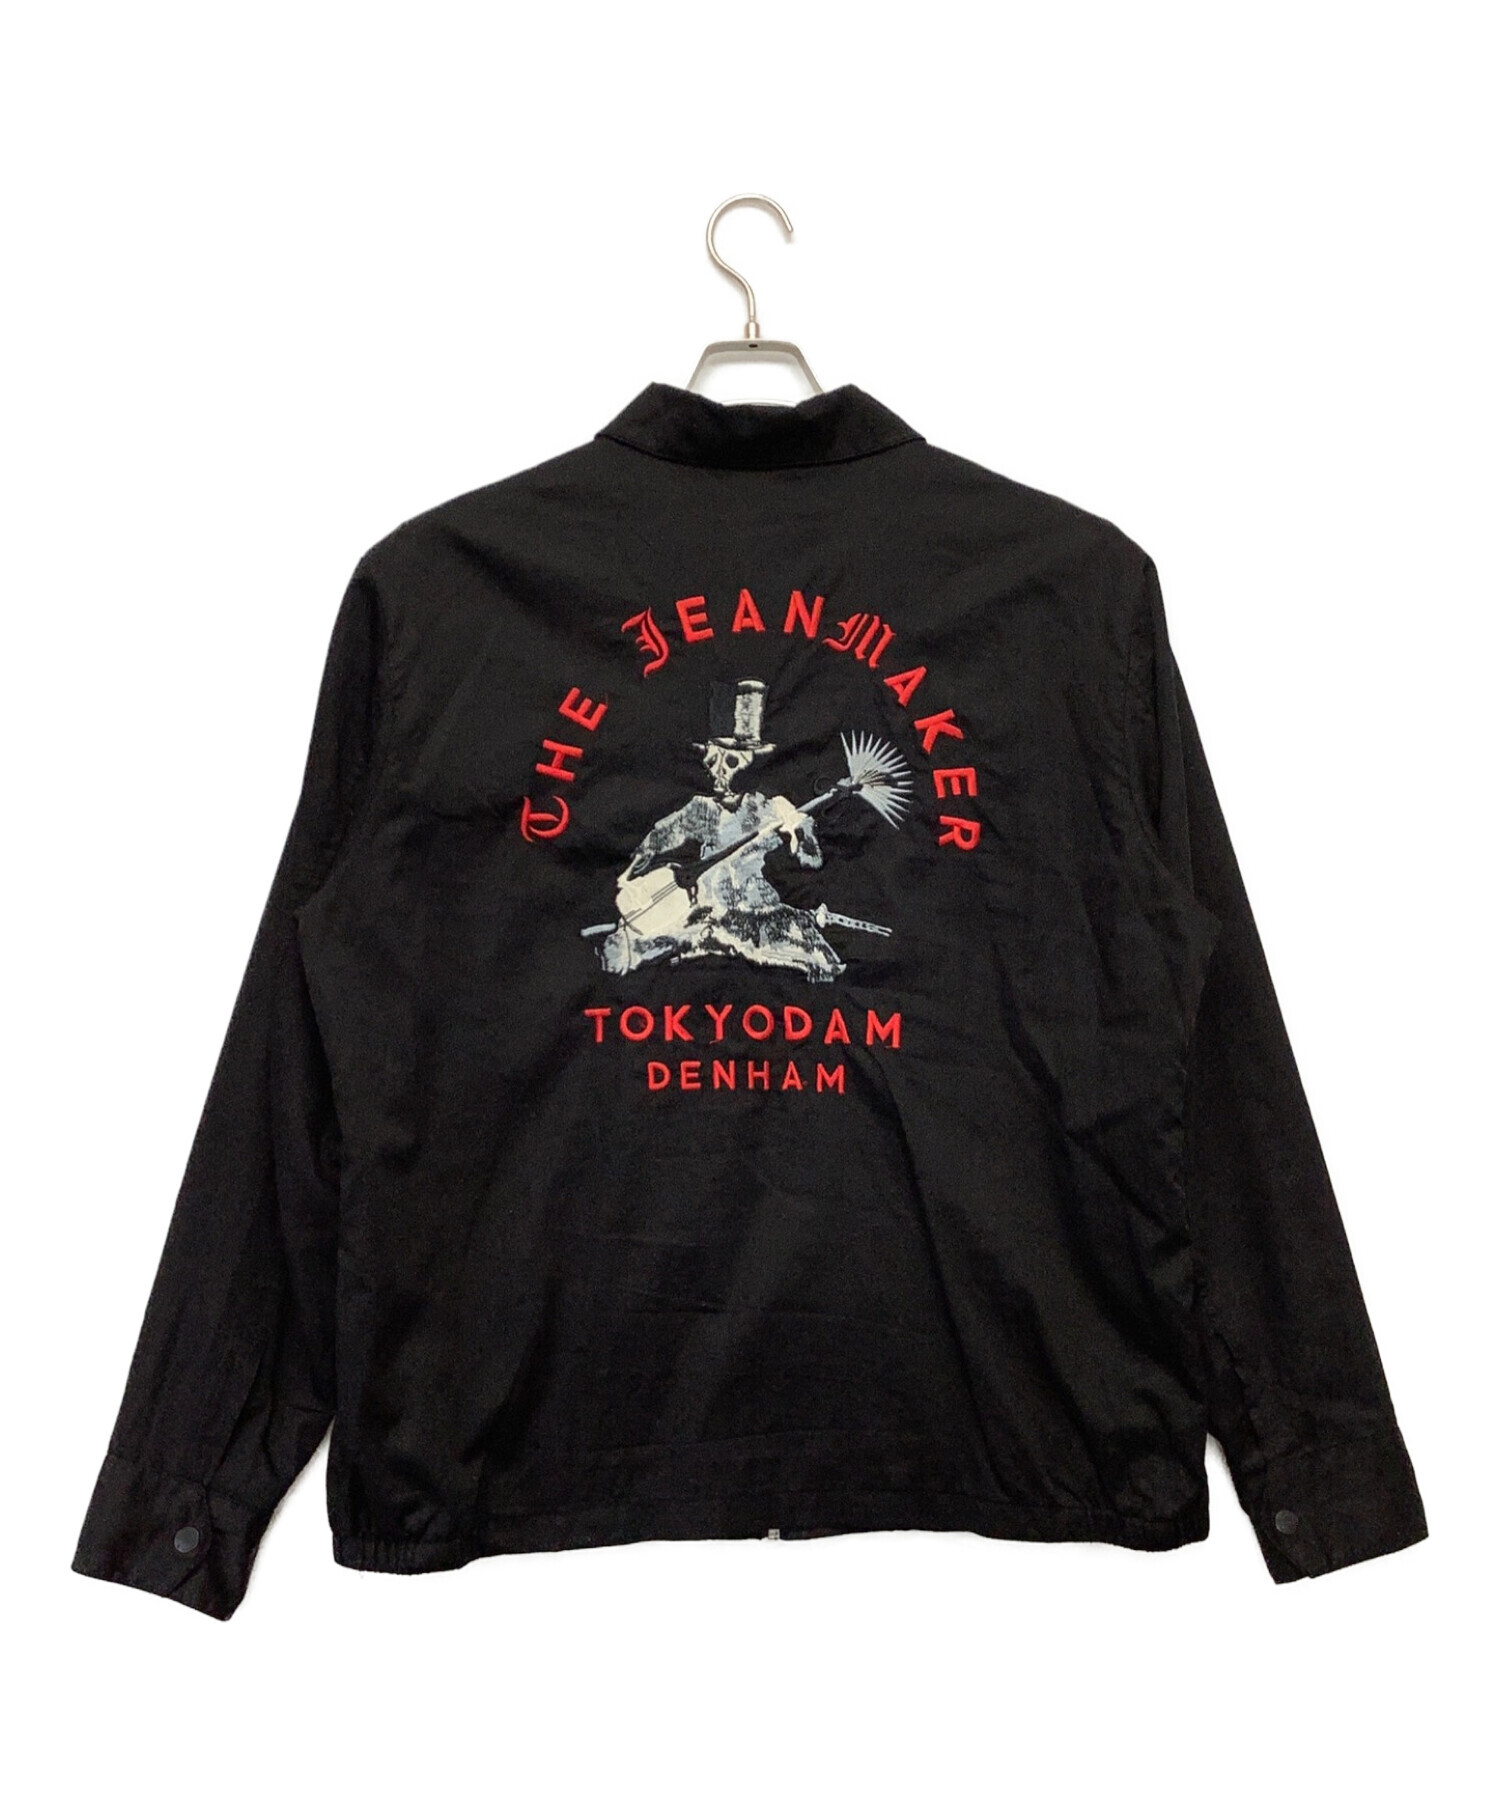 Denham (デンハム) レイトンスカジャケット ブラック サイズ:L